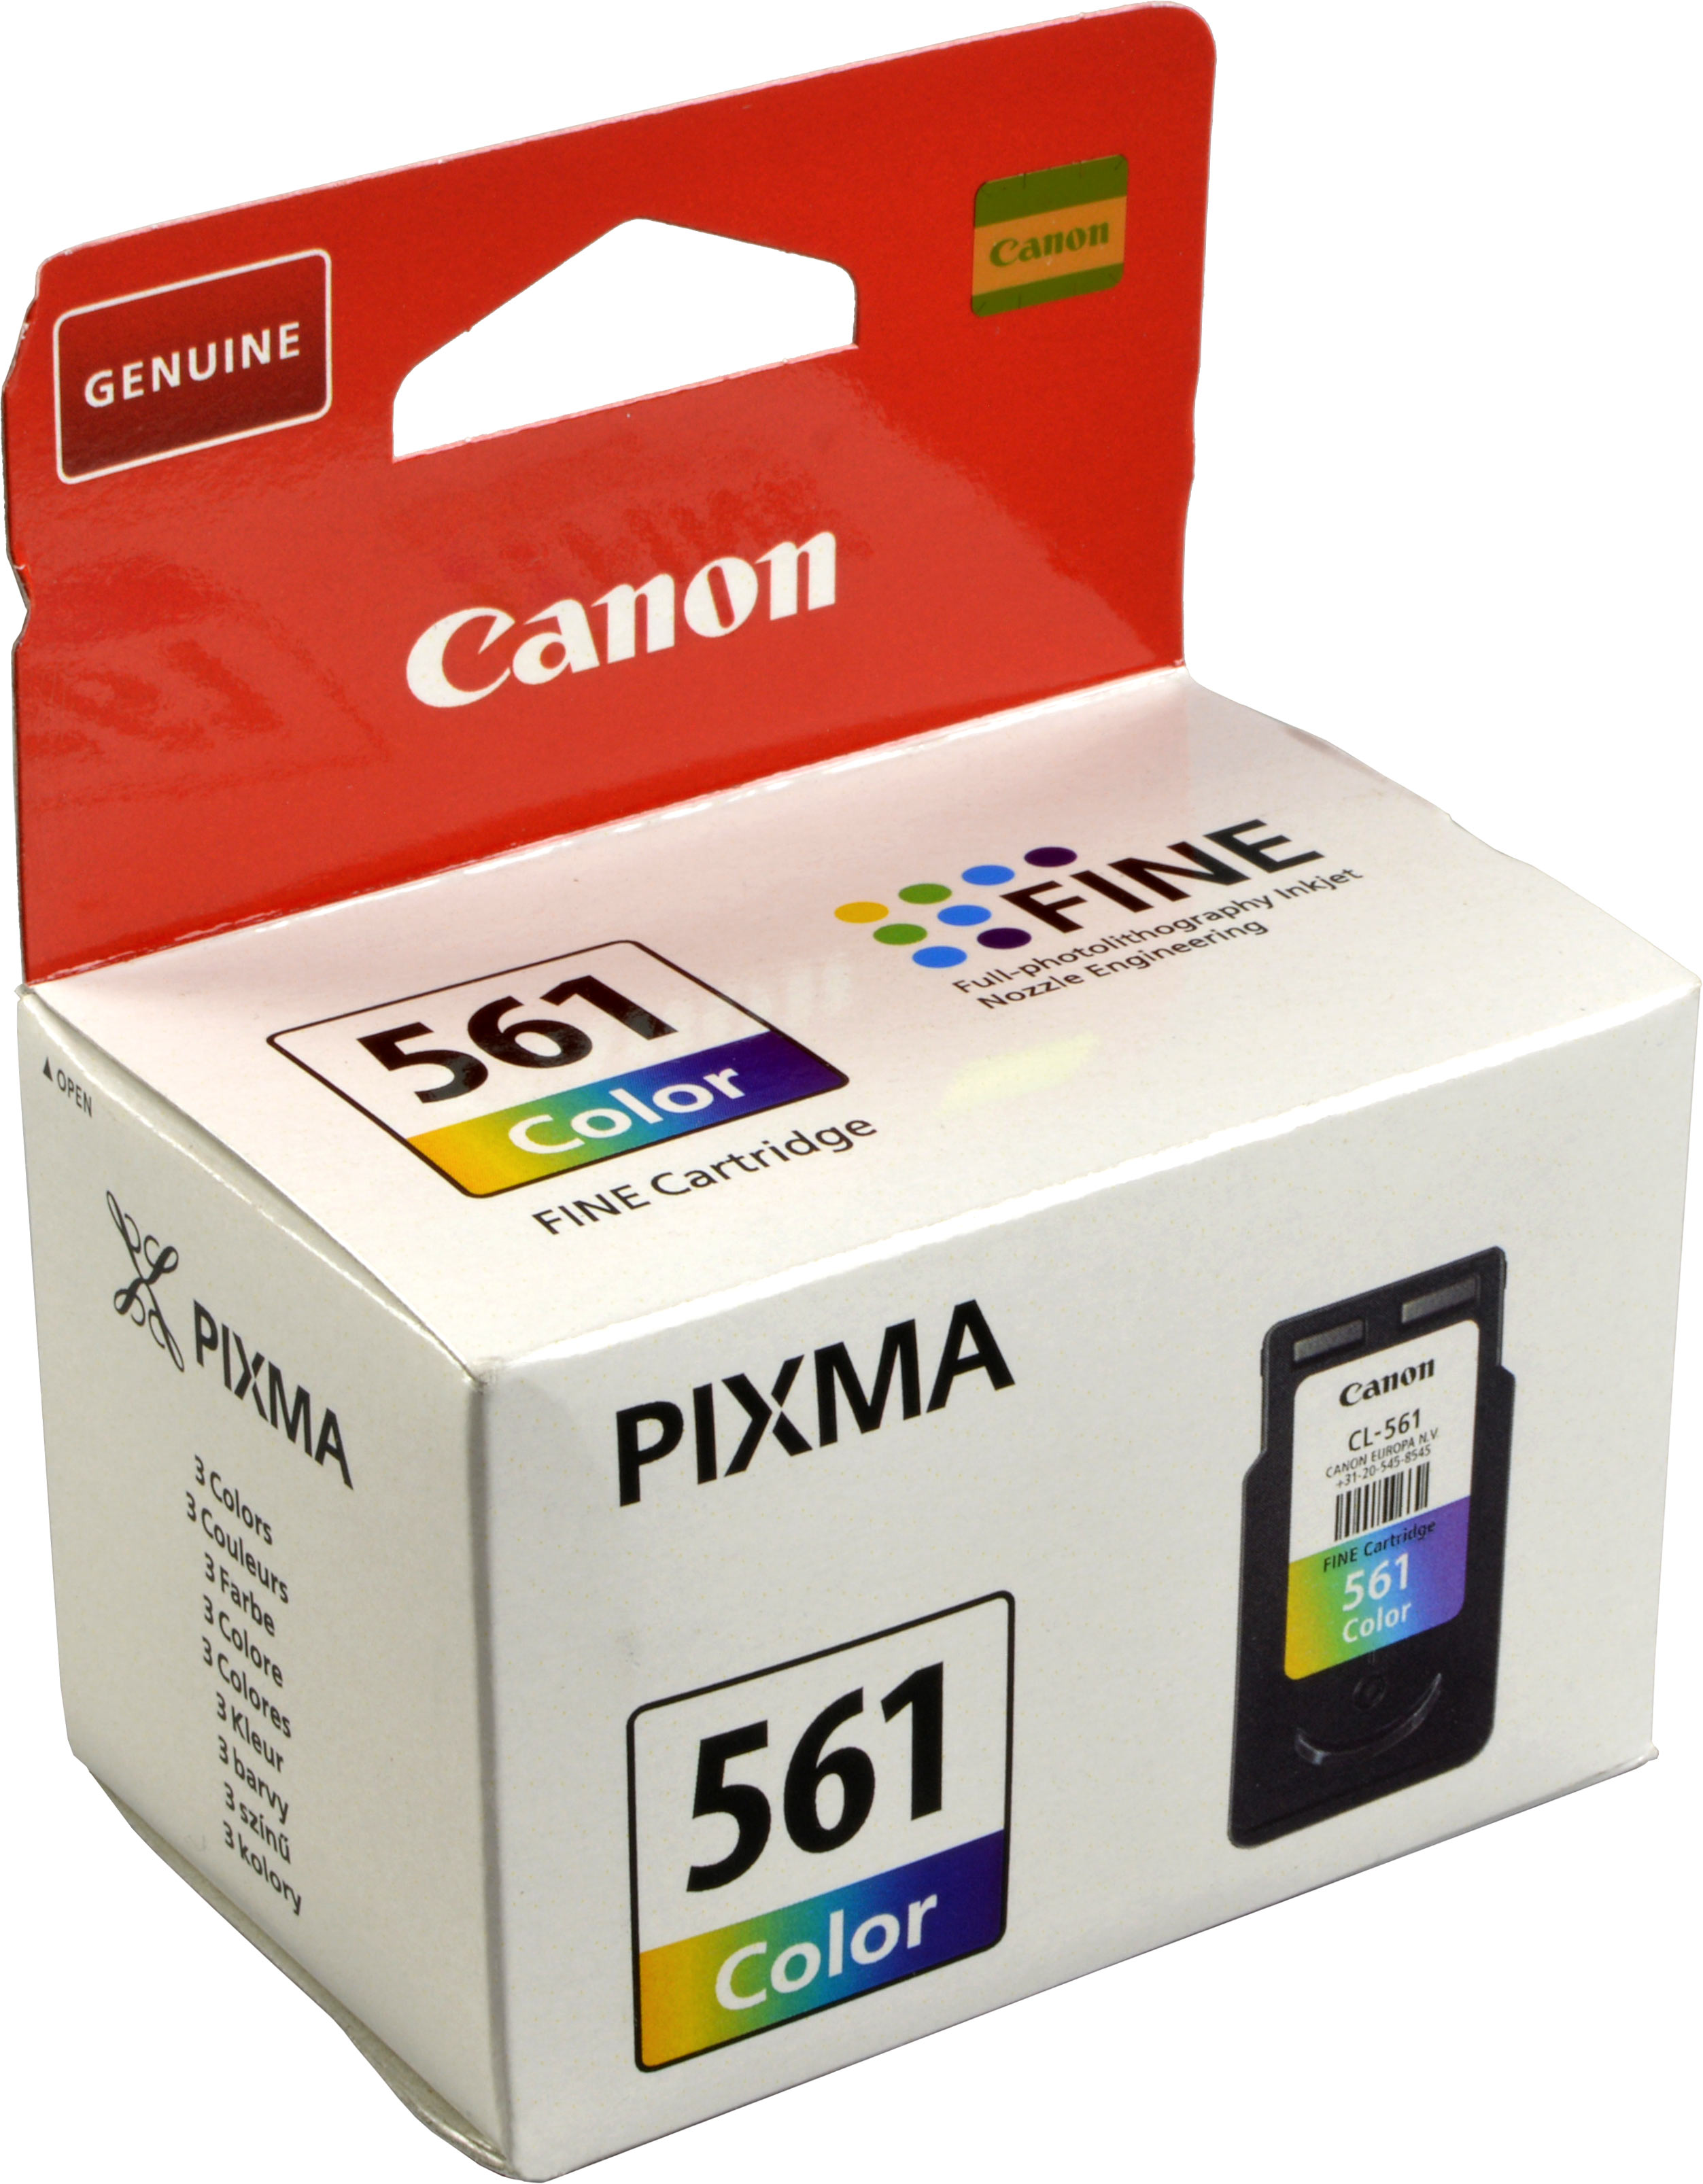 Canon Tinte 3731C001  CL-561  color